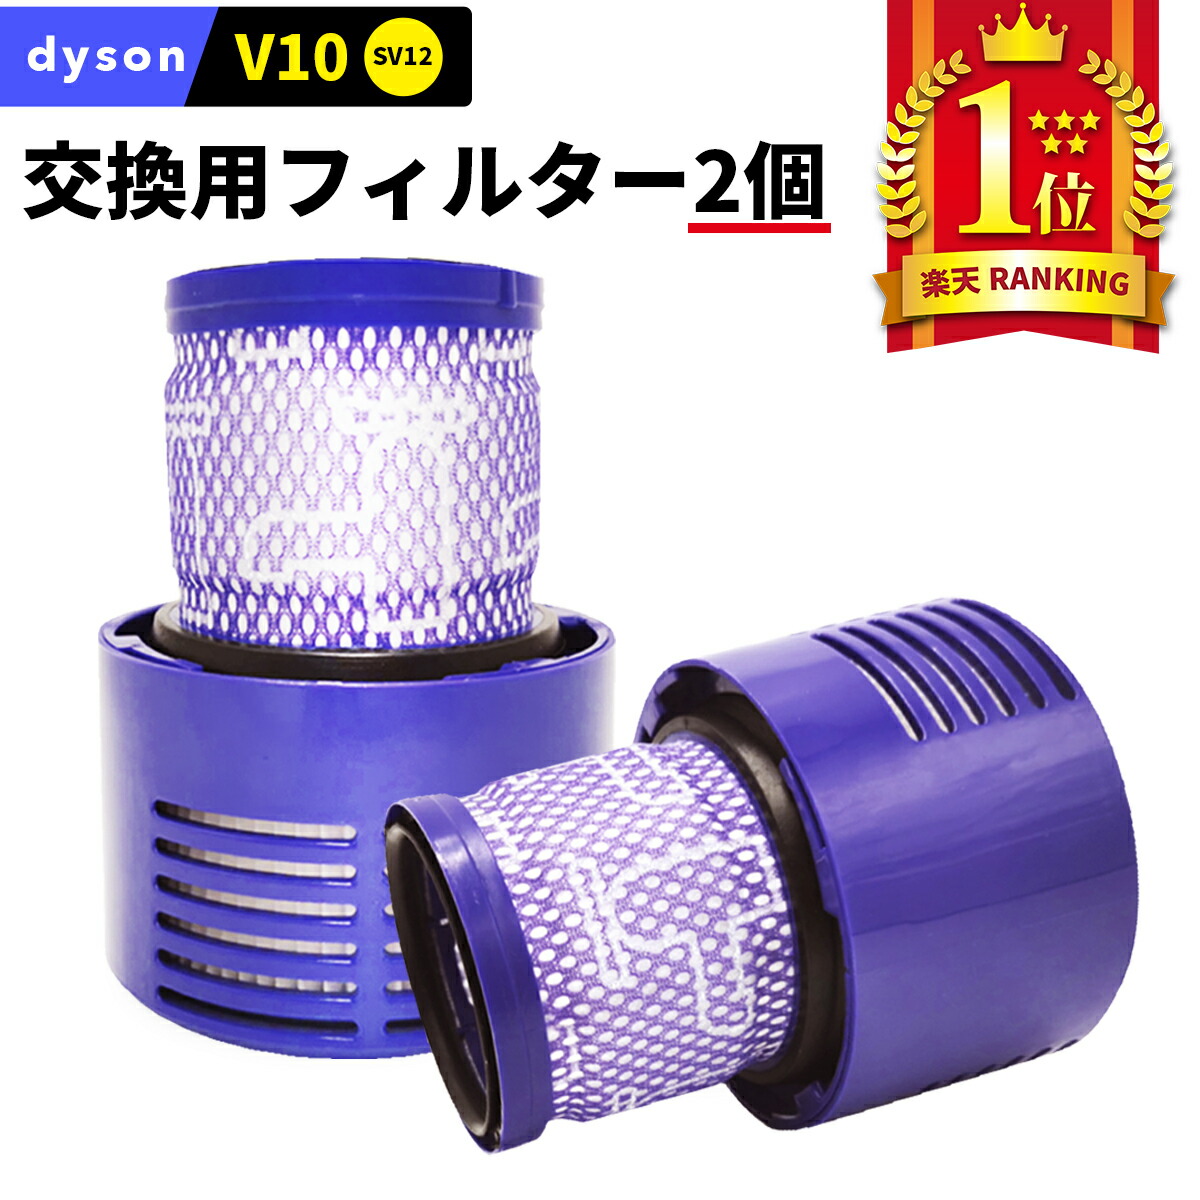 ダイソンV10 フィルター ２個セット 交換用 dyson 掃除機用 互換 フィルター Dyson お買い得 掃除機 V10 SV12